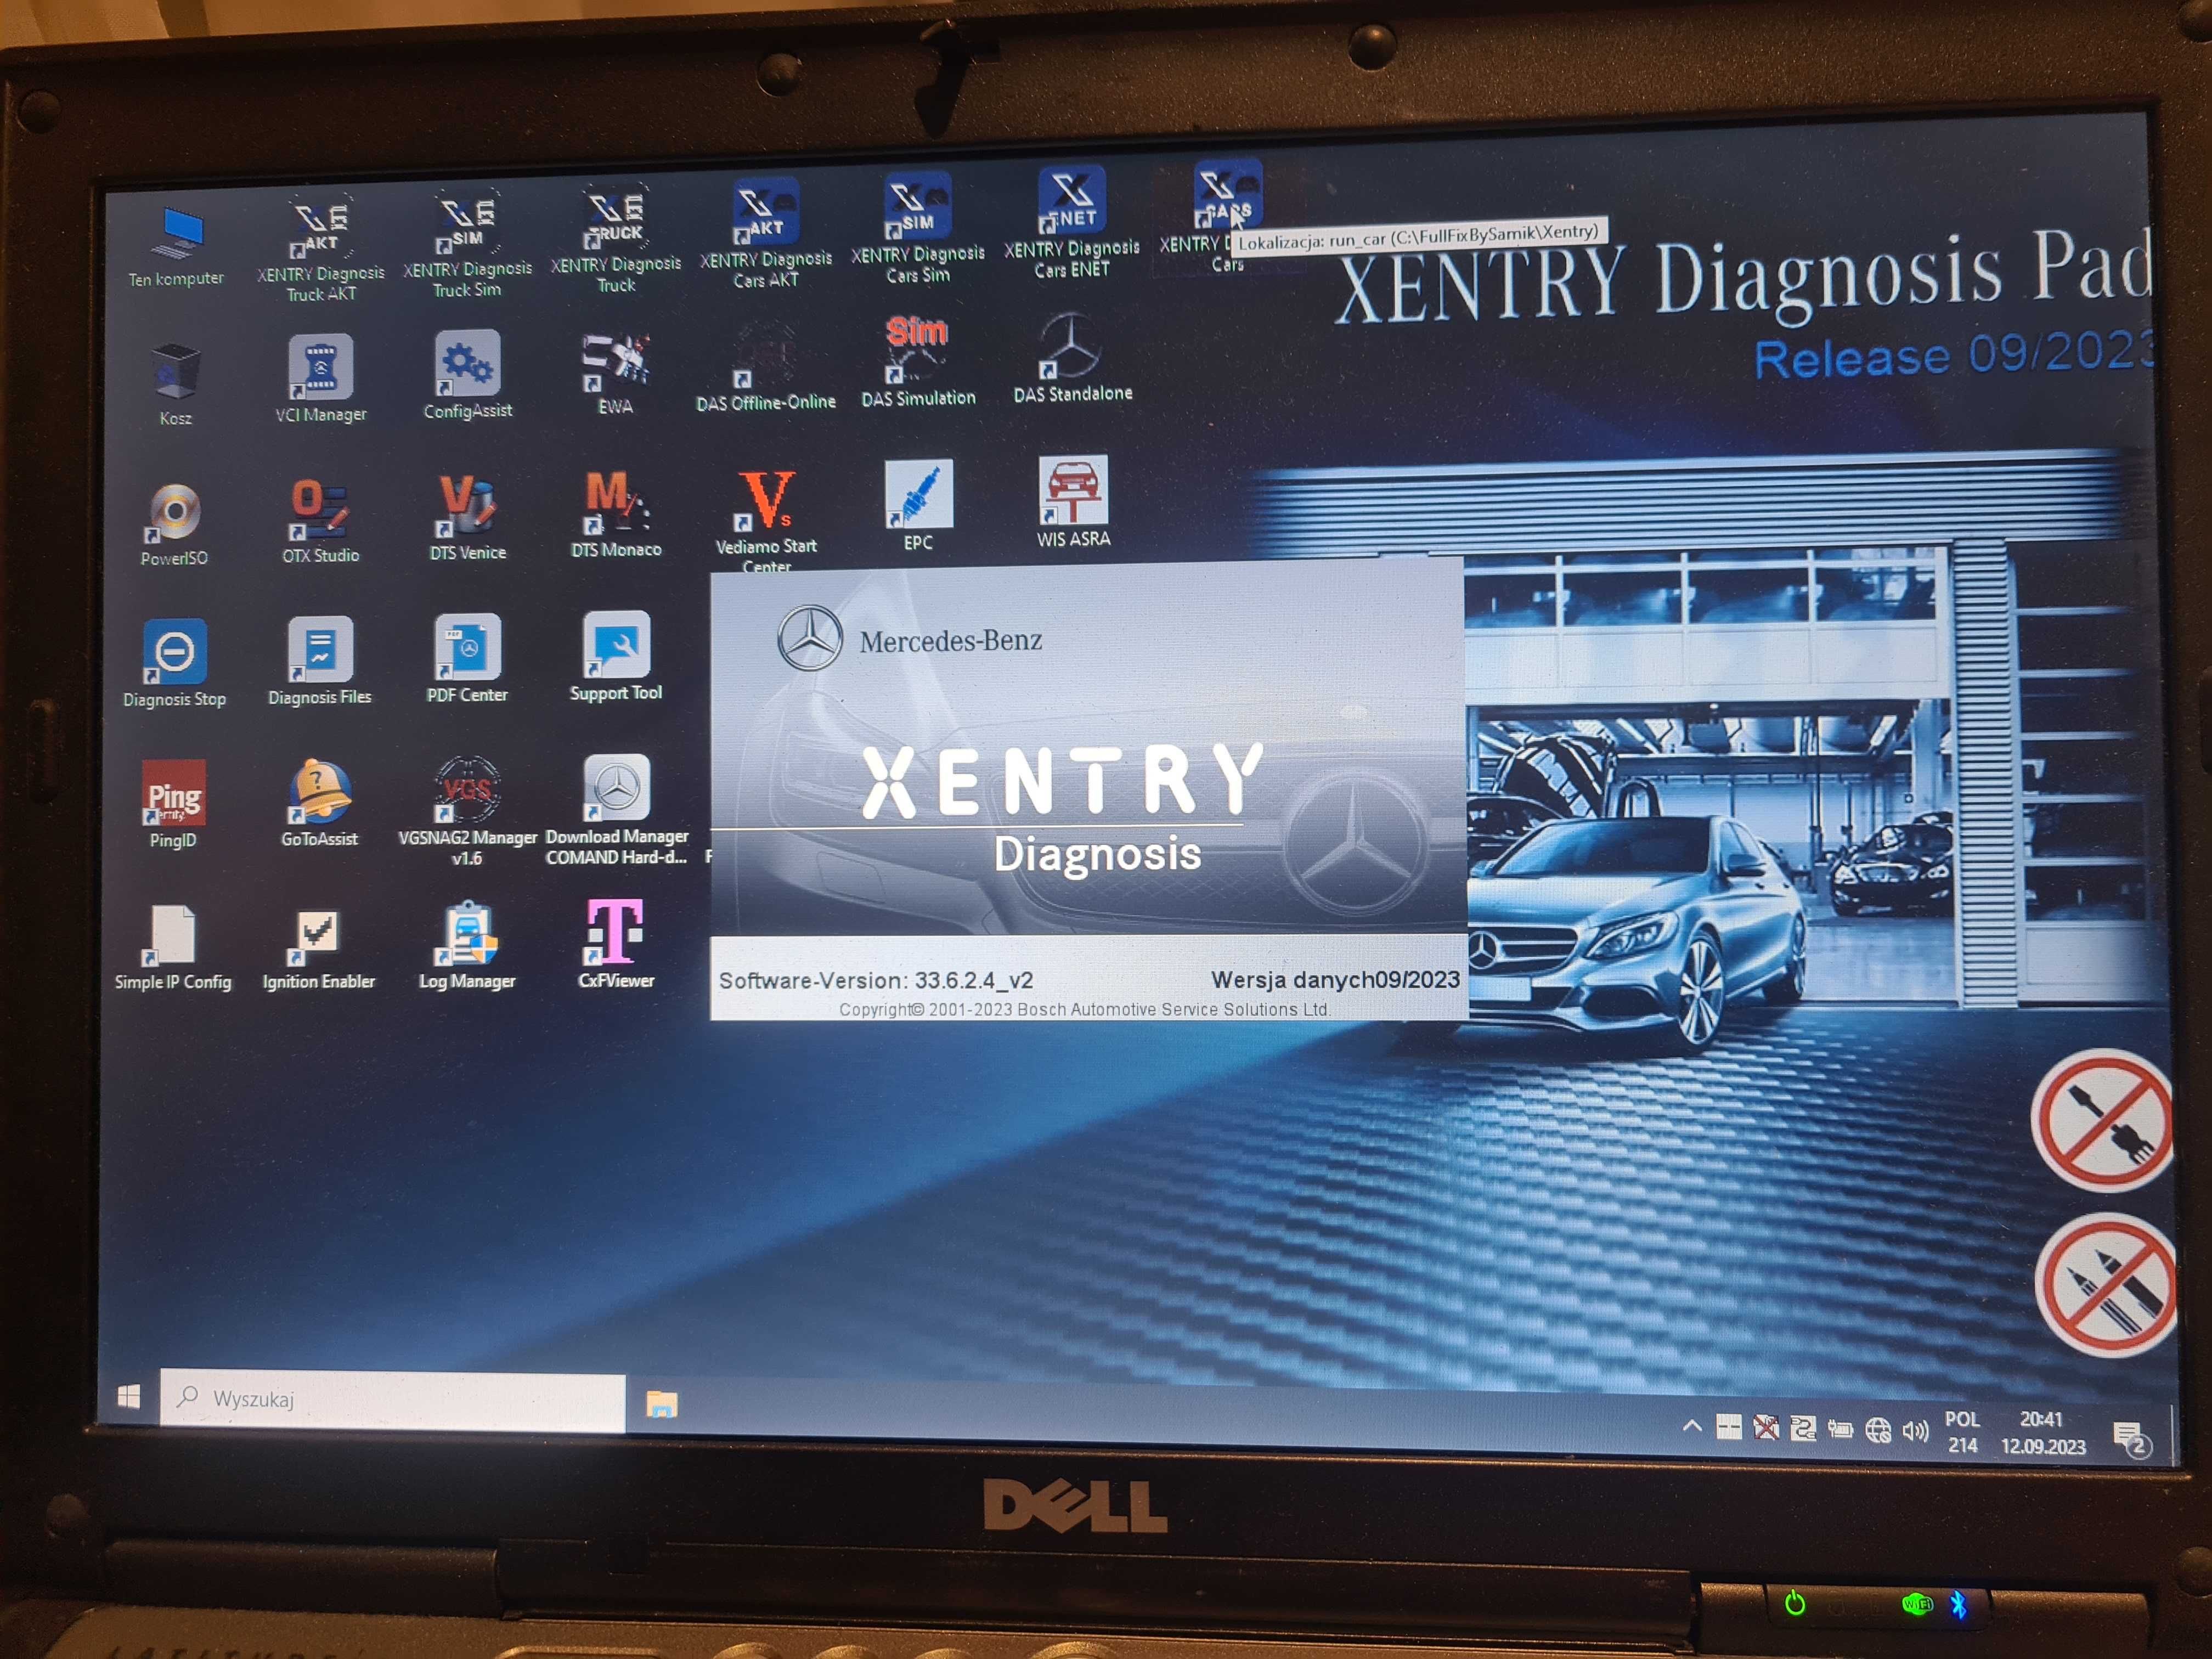 Dell E6320 Diagnosis Mercedes Xentry DAS 09.2023